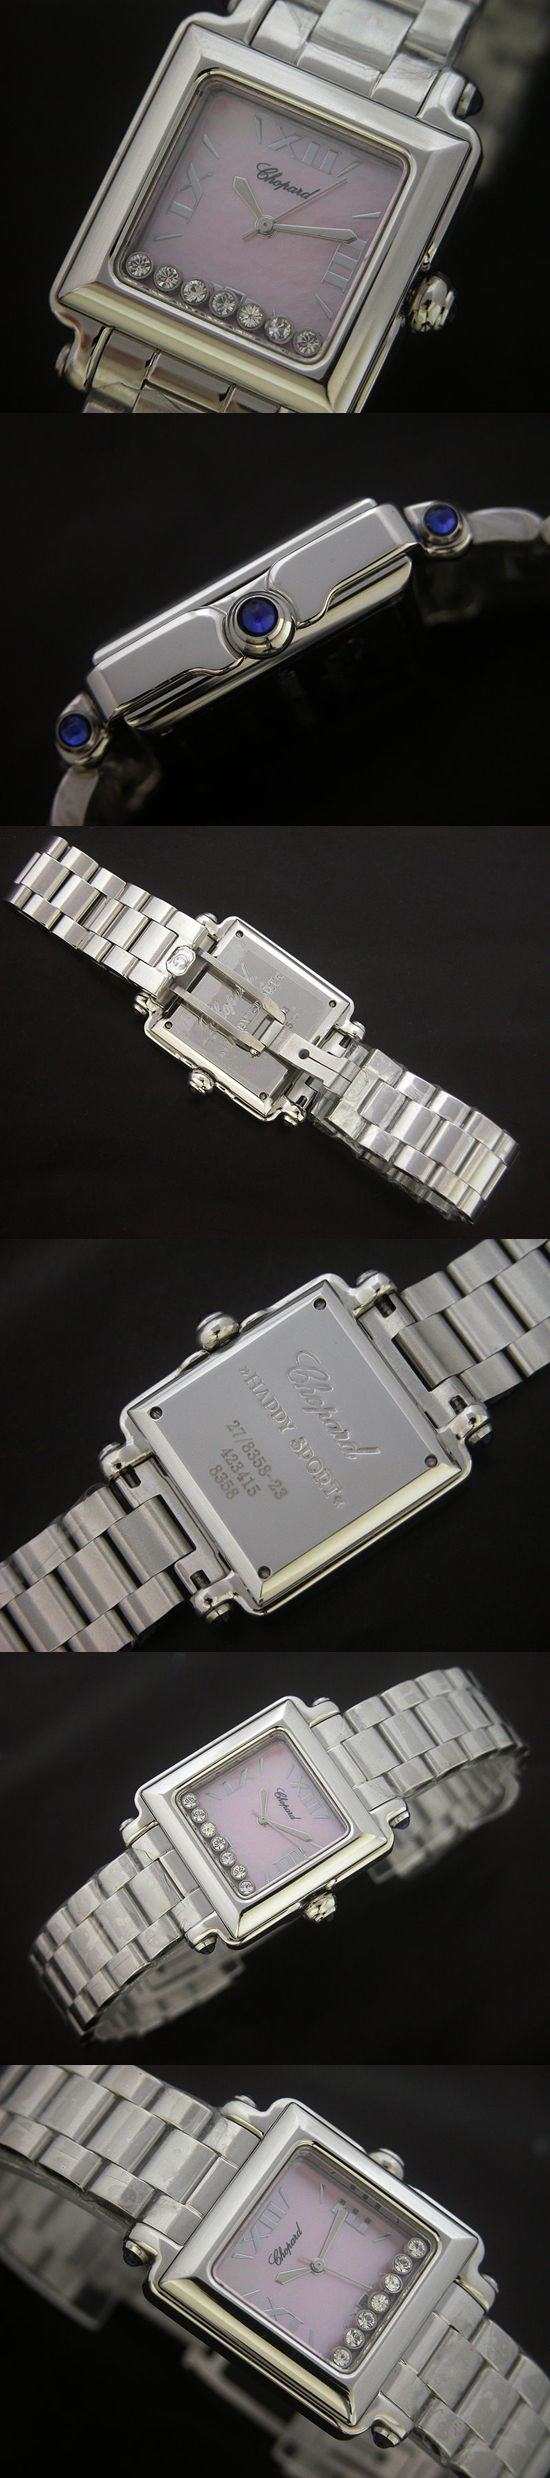 おしゃれなブランド時計がショパール-CHOPARD-ラ ストラーダ-27-8893-21-ad  女性用腕時計を提供します.